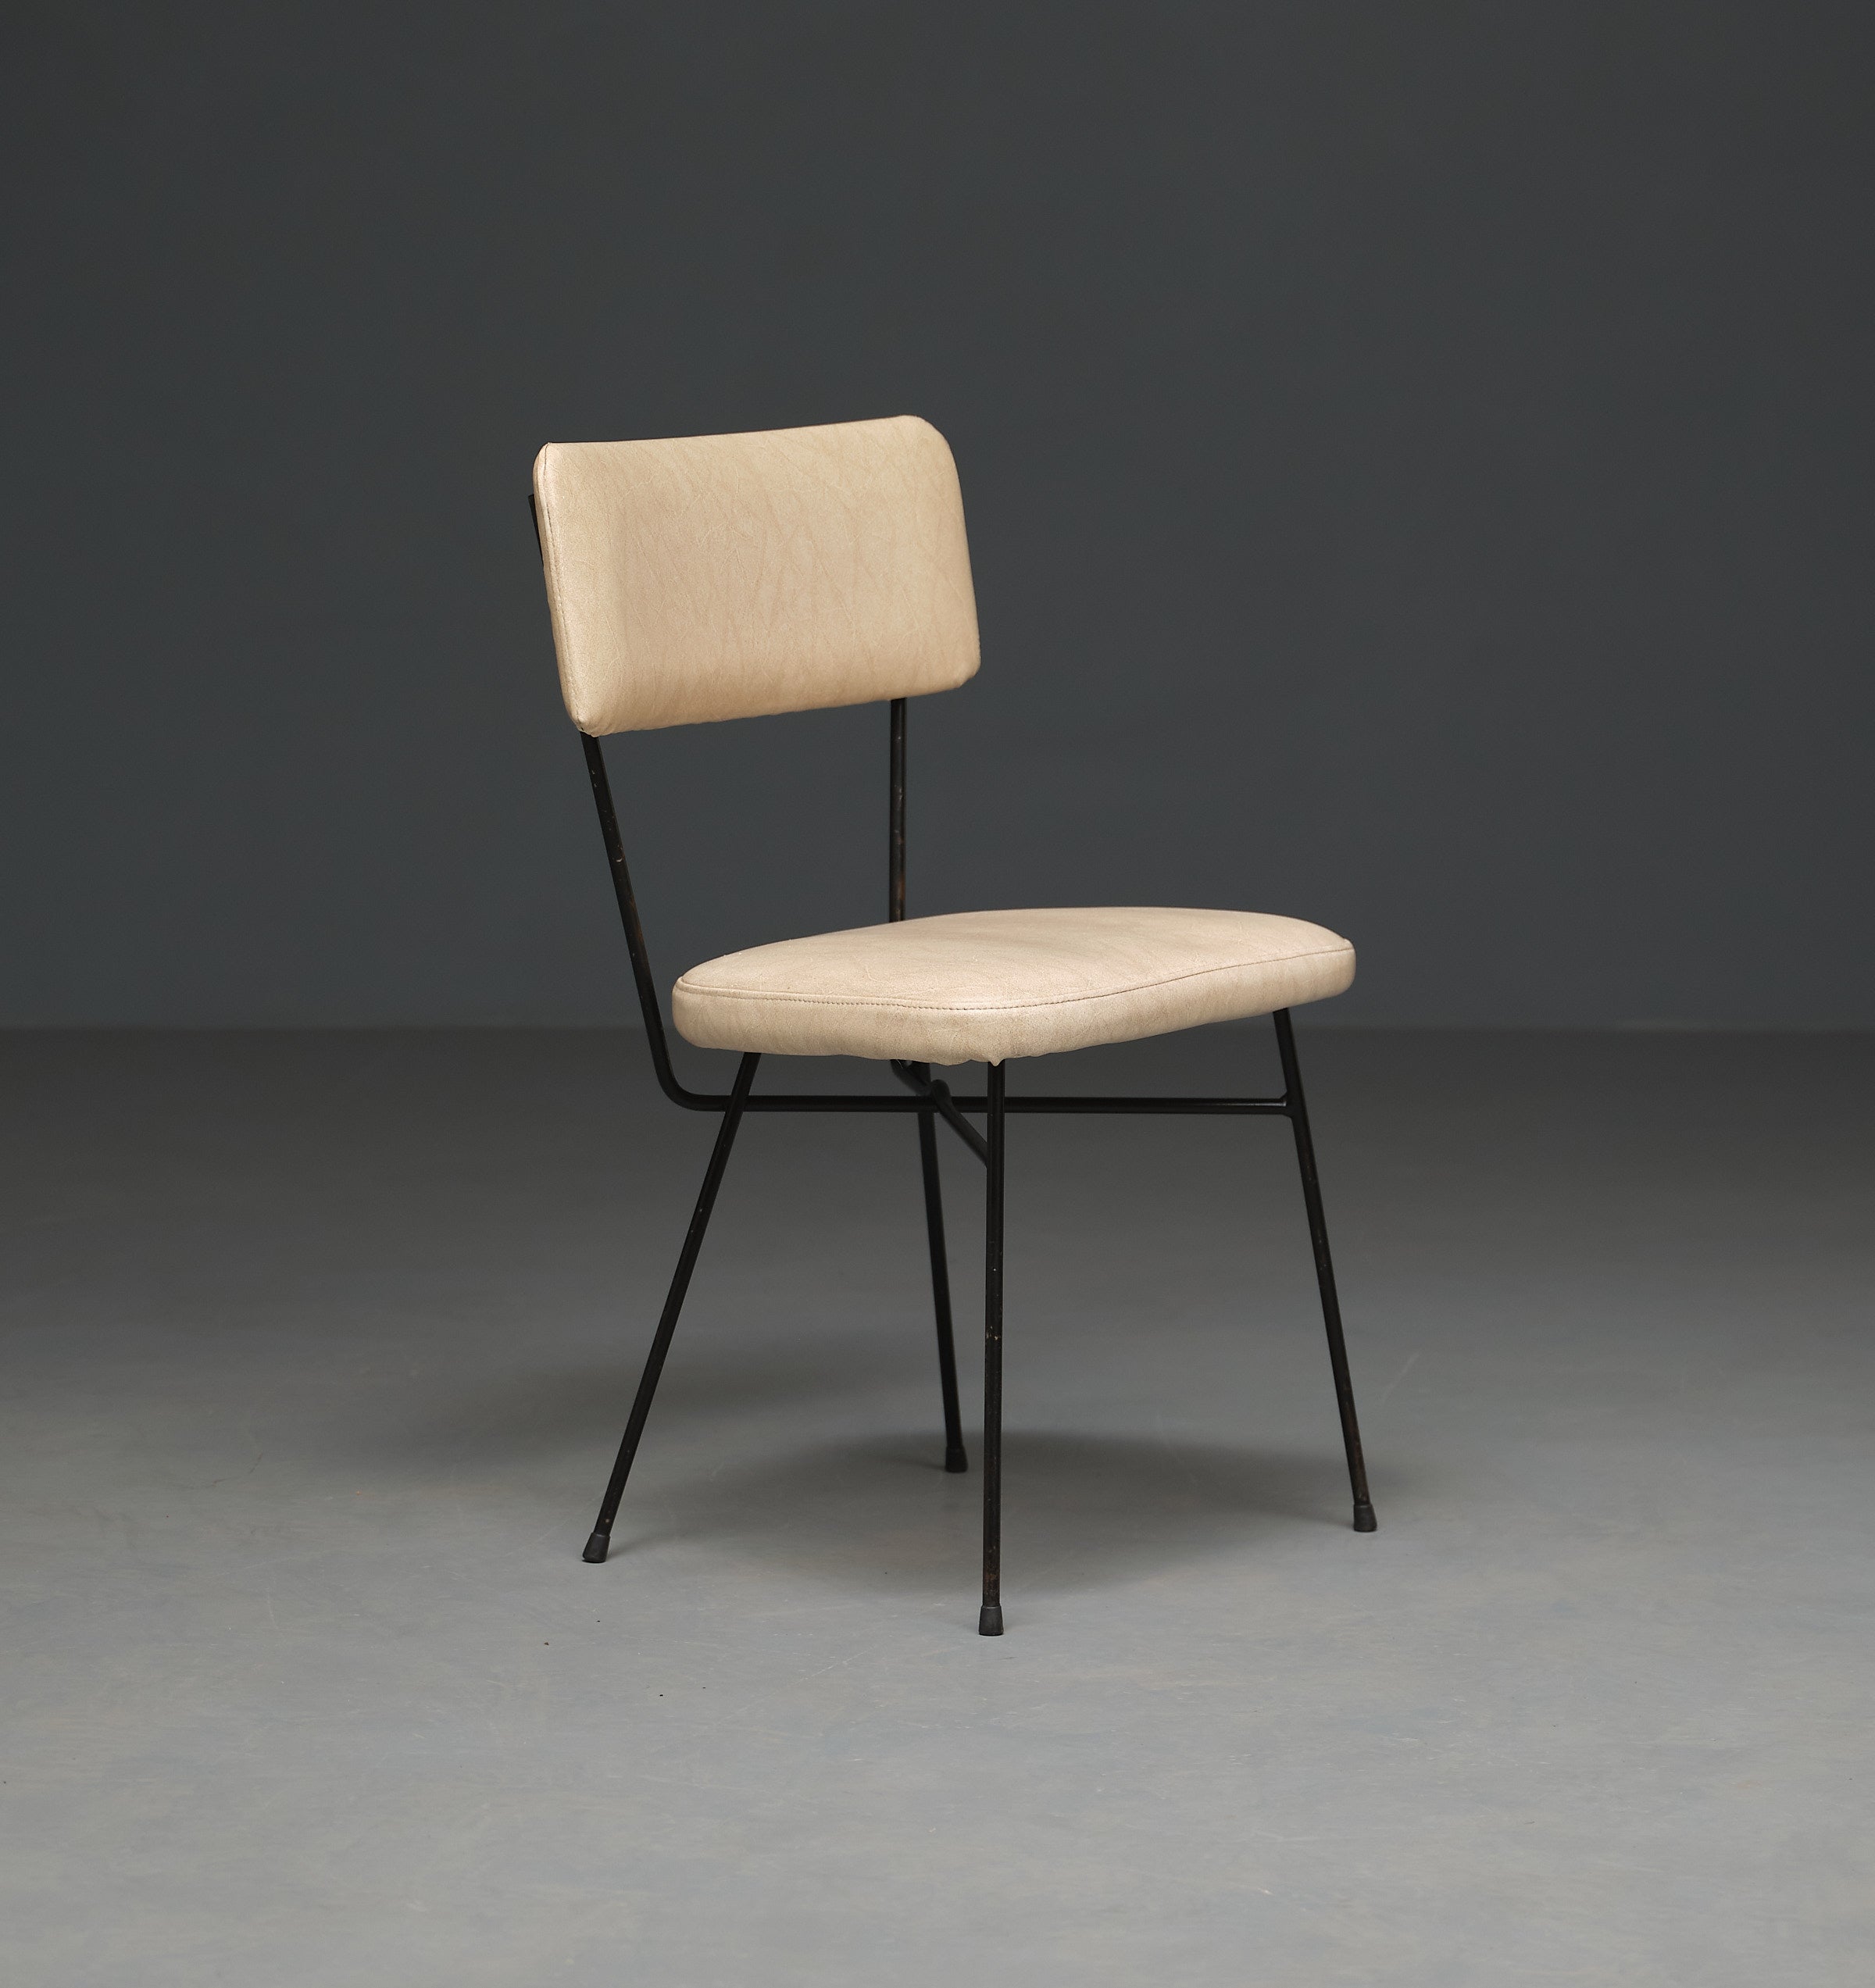 Voici une chaise vintage emblématique conçue par le célèbre Studio BBPR pour Arflex, datant des années 1950. Ces classiques intemporels dégagent un charme unique qui promet de rehausser votre décoration intérieure.

Ces chaises sont dotées d'un